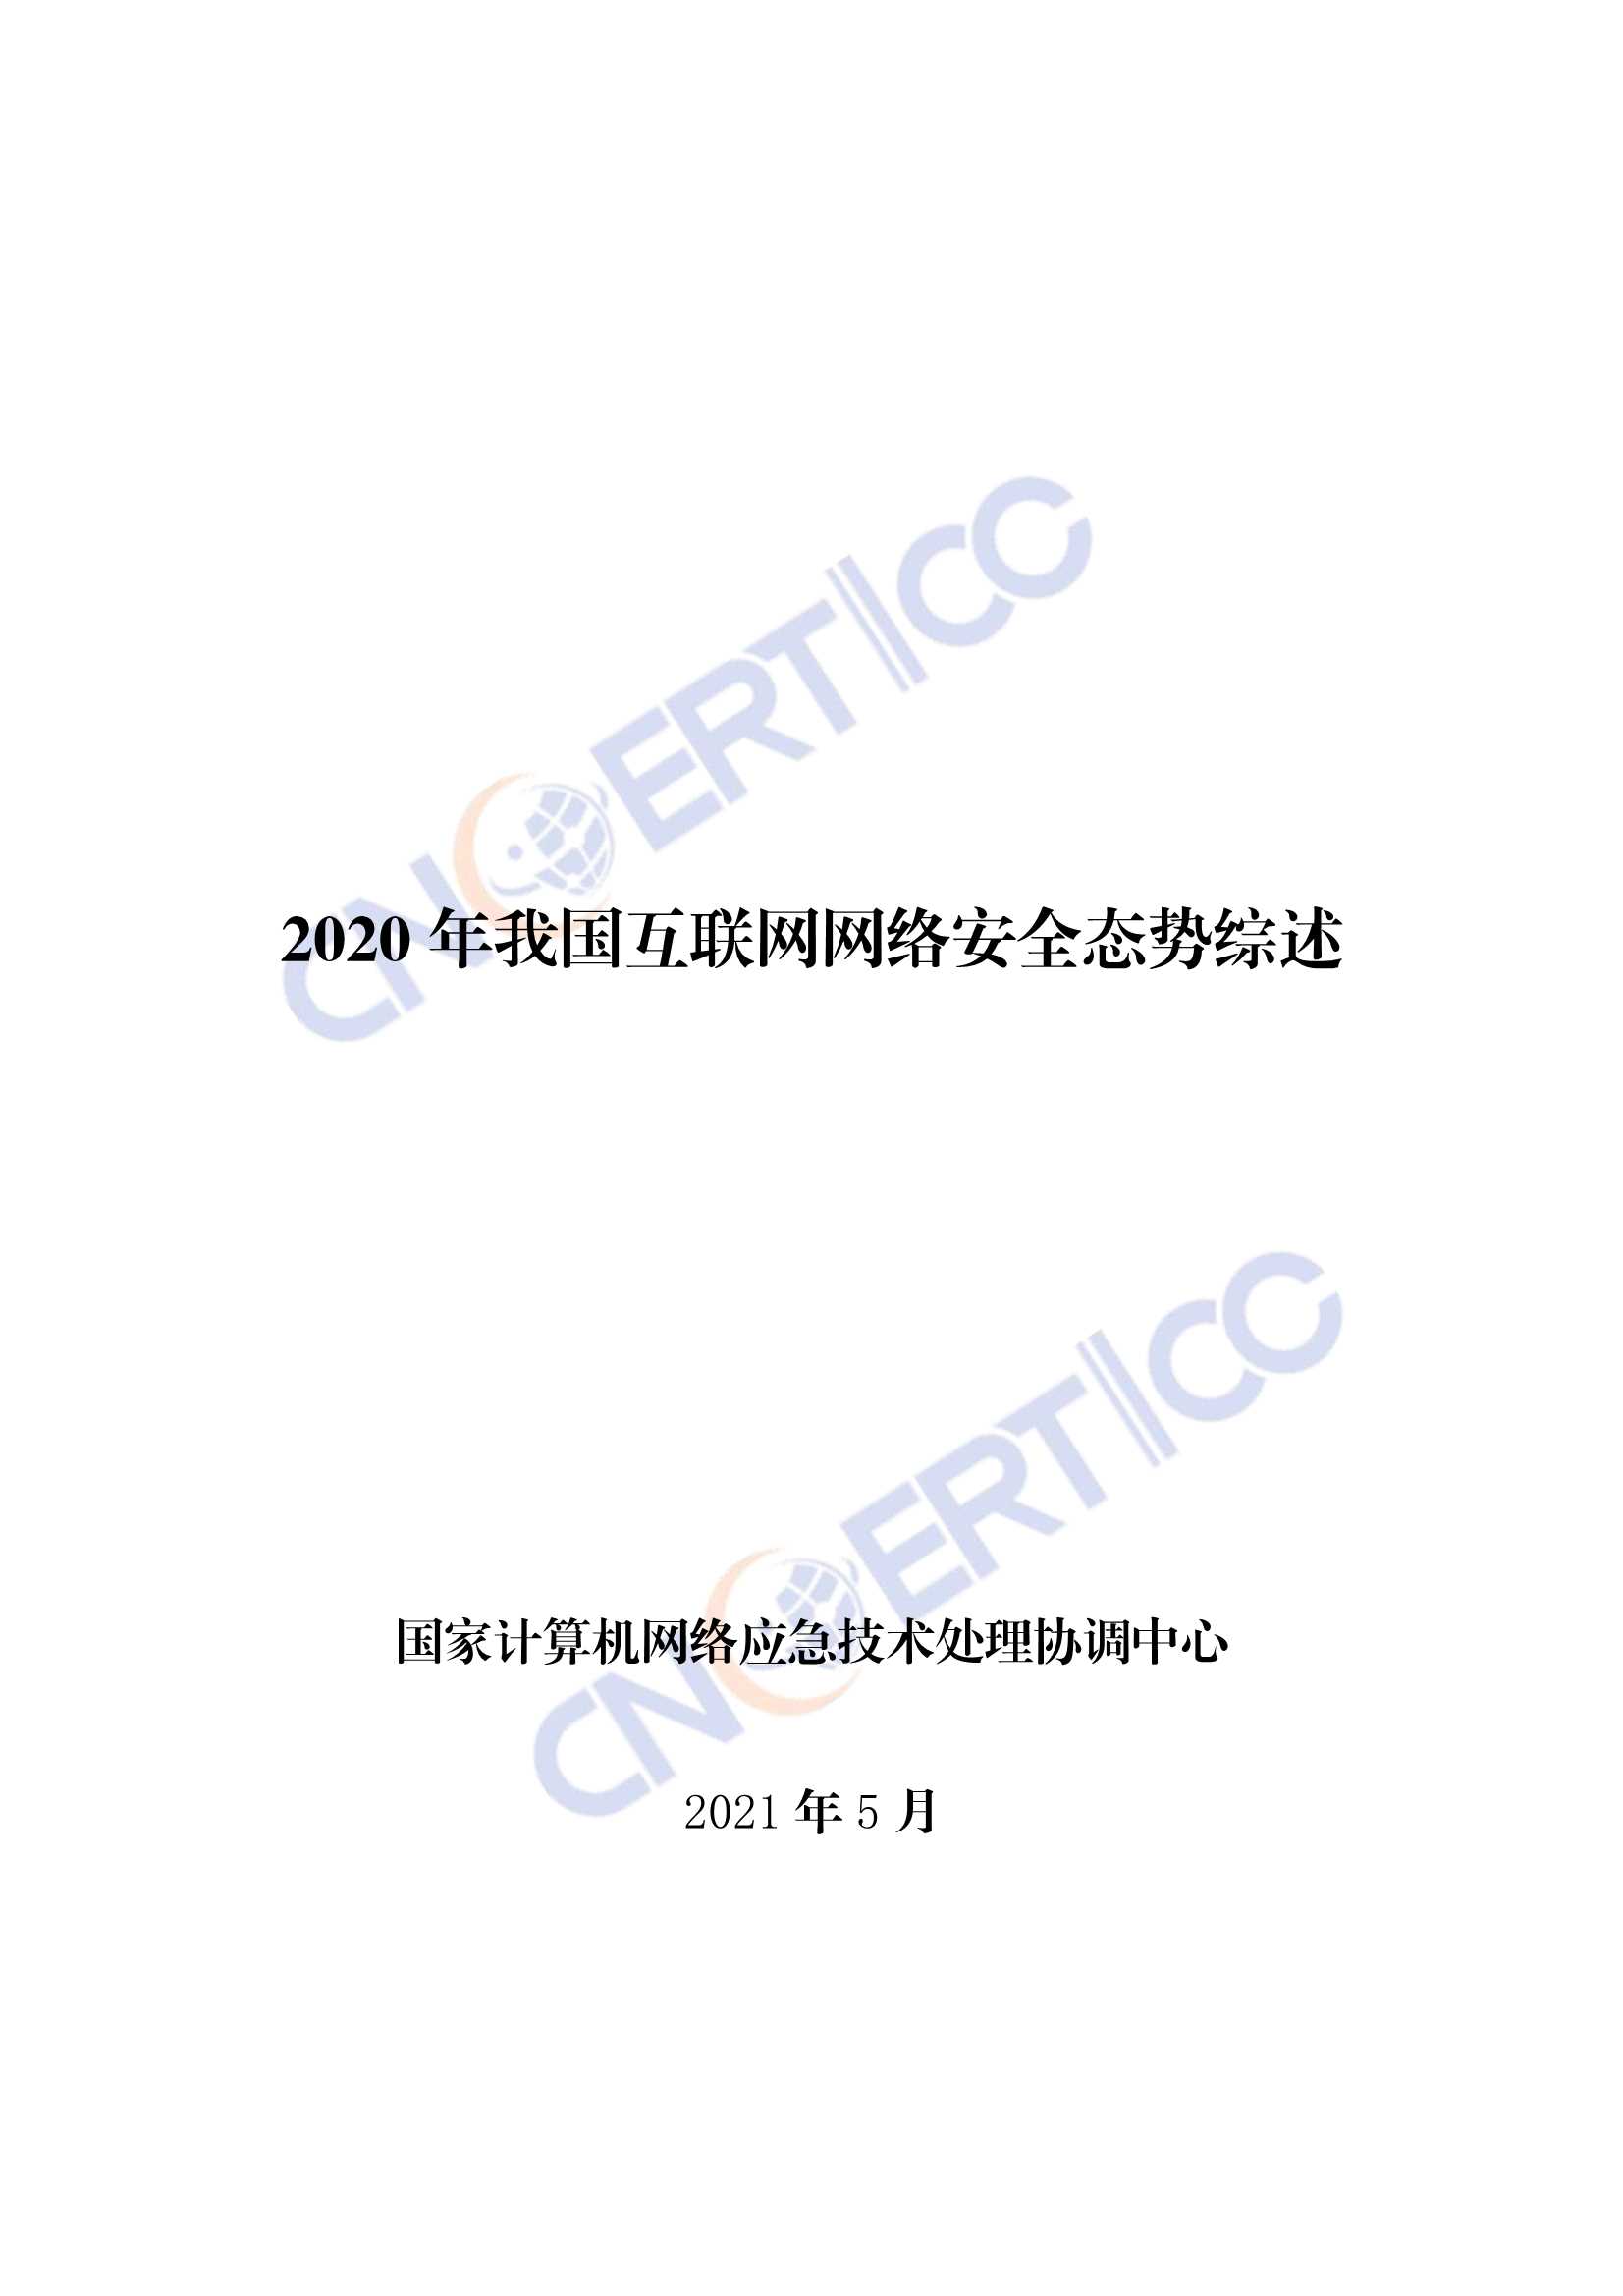 CNCERT-2020年我国互联网网络安全态势综述-2021.05-32页